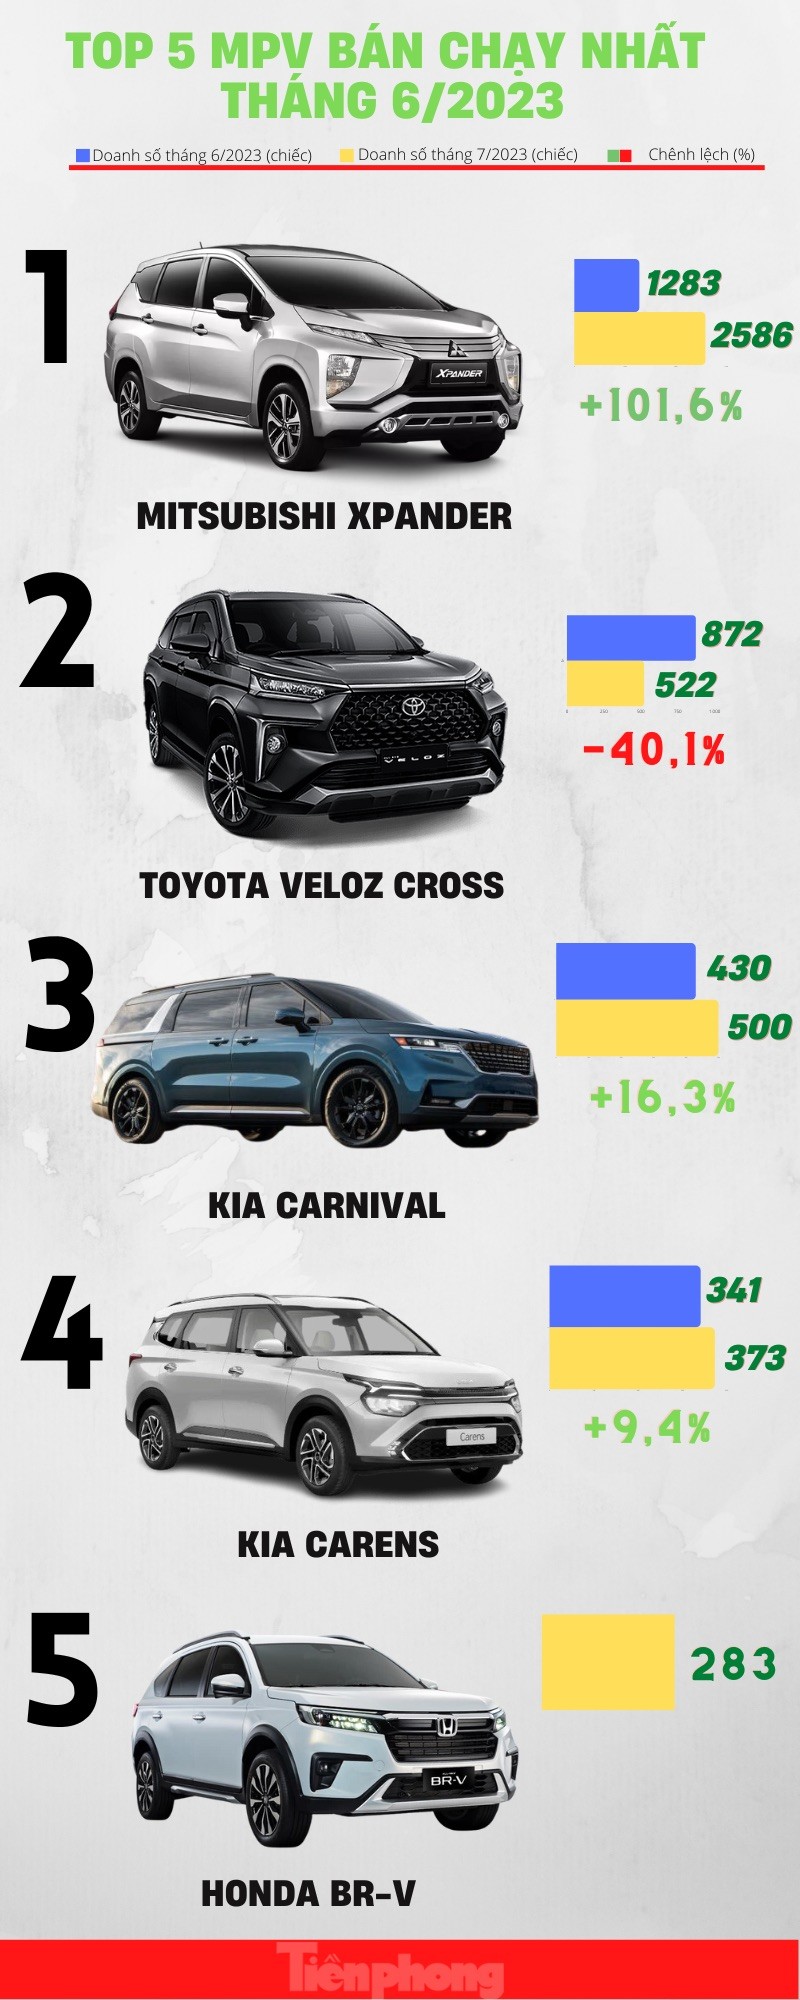 Những mẫu xe đa dụng có doanh số cao nhất tháng 7